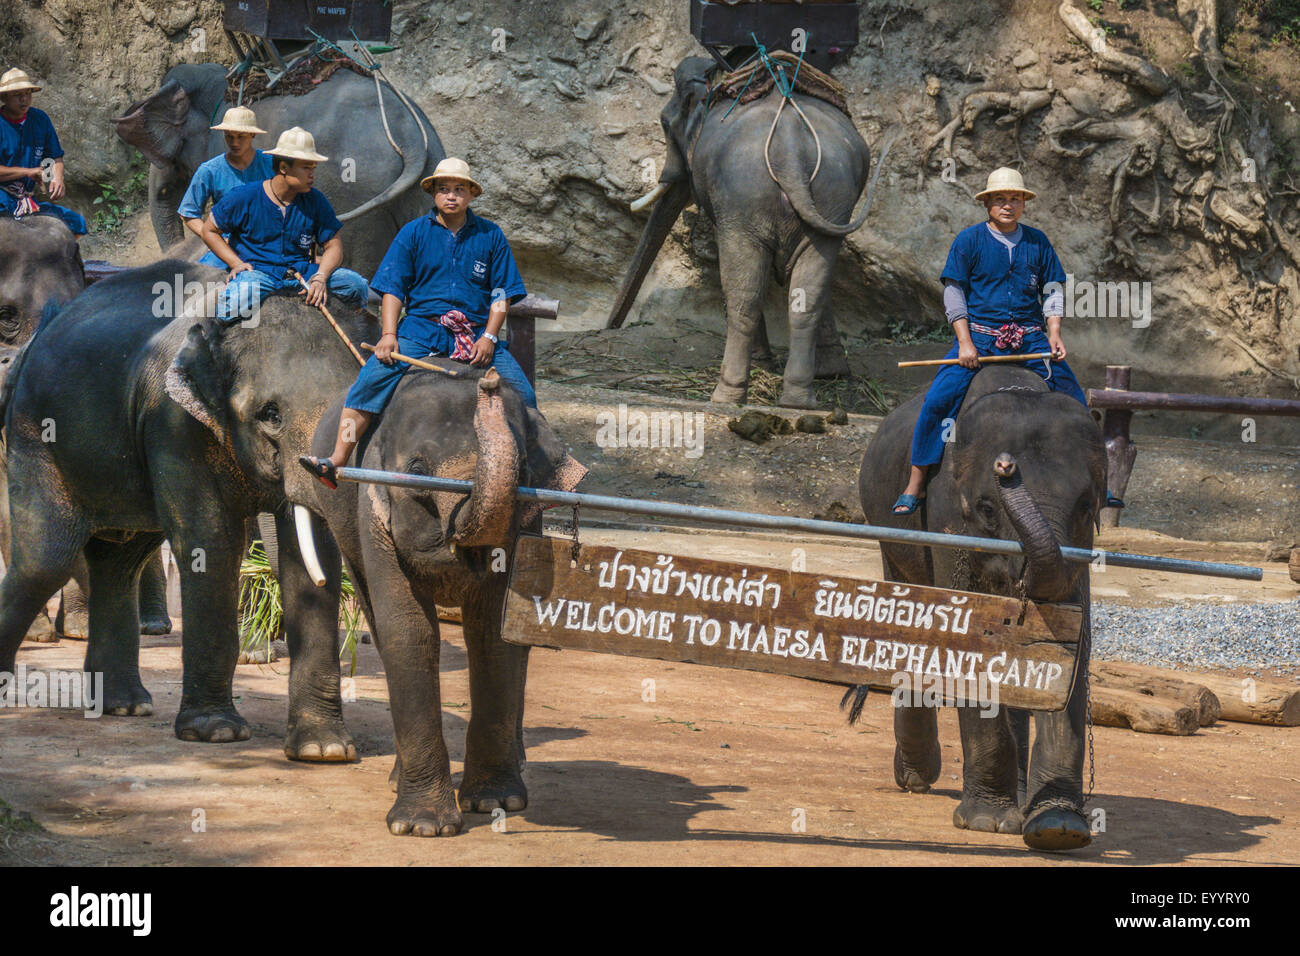 El elefante asiático, el elefante asiático (Elephas maximus), mahouts abriendo el espectáculo con sus elefantes asiáticos en la Maesa Elephant Camp, Tailandia Chiang Mai. Foto de stock